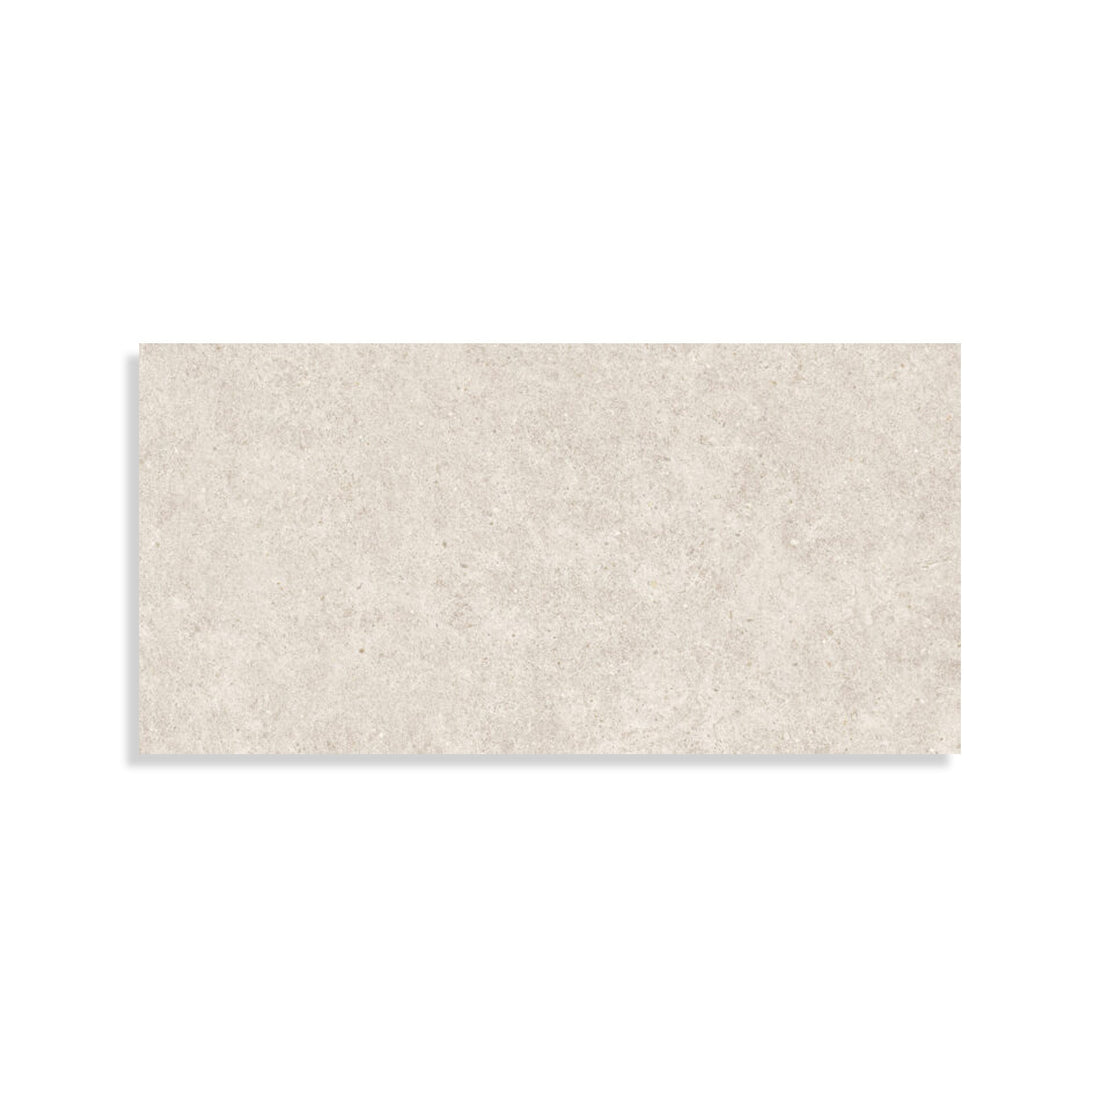 Minoli - Boost Stone White Matt, 60 x 120cm (BST1280) - Tiles &amp; Stone To You